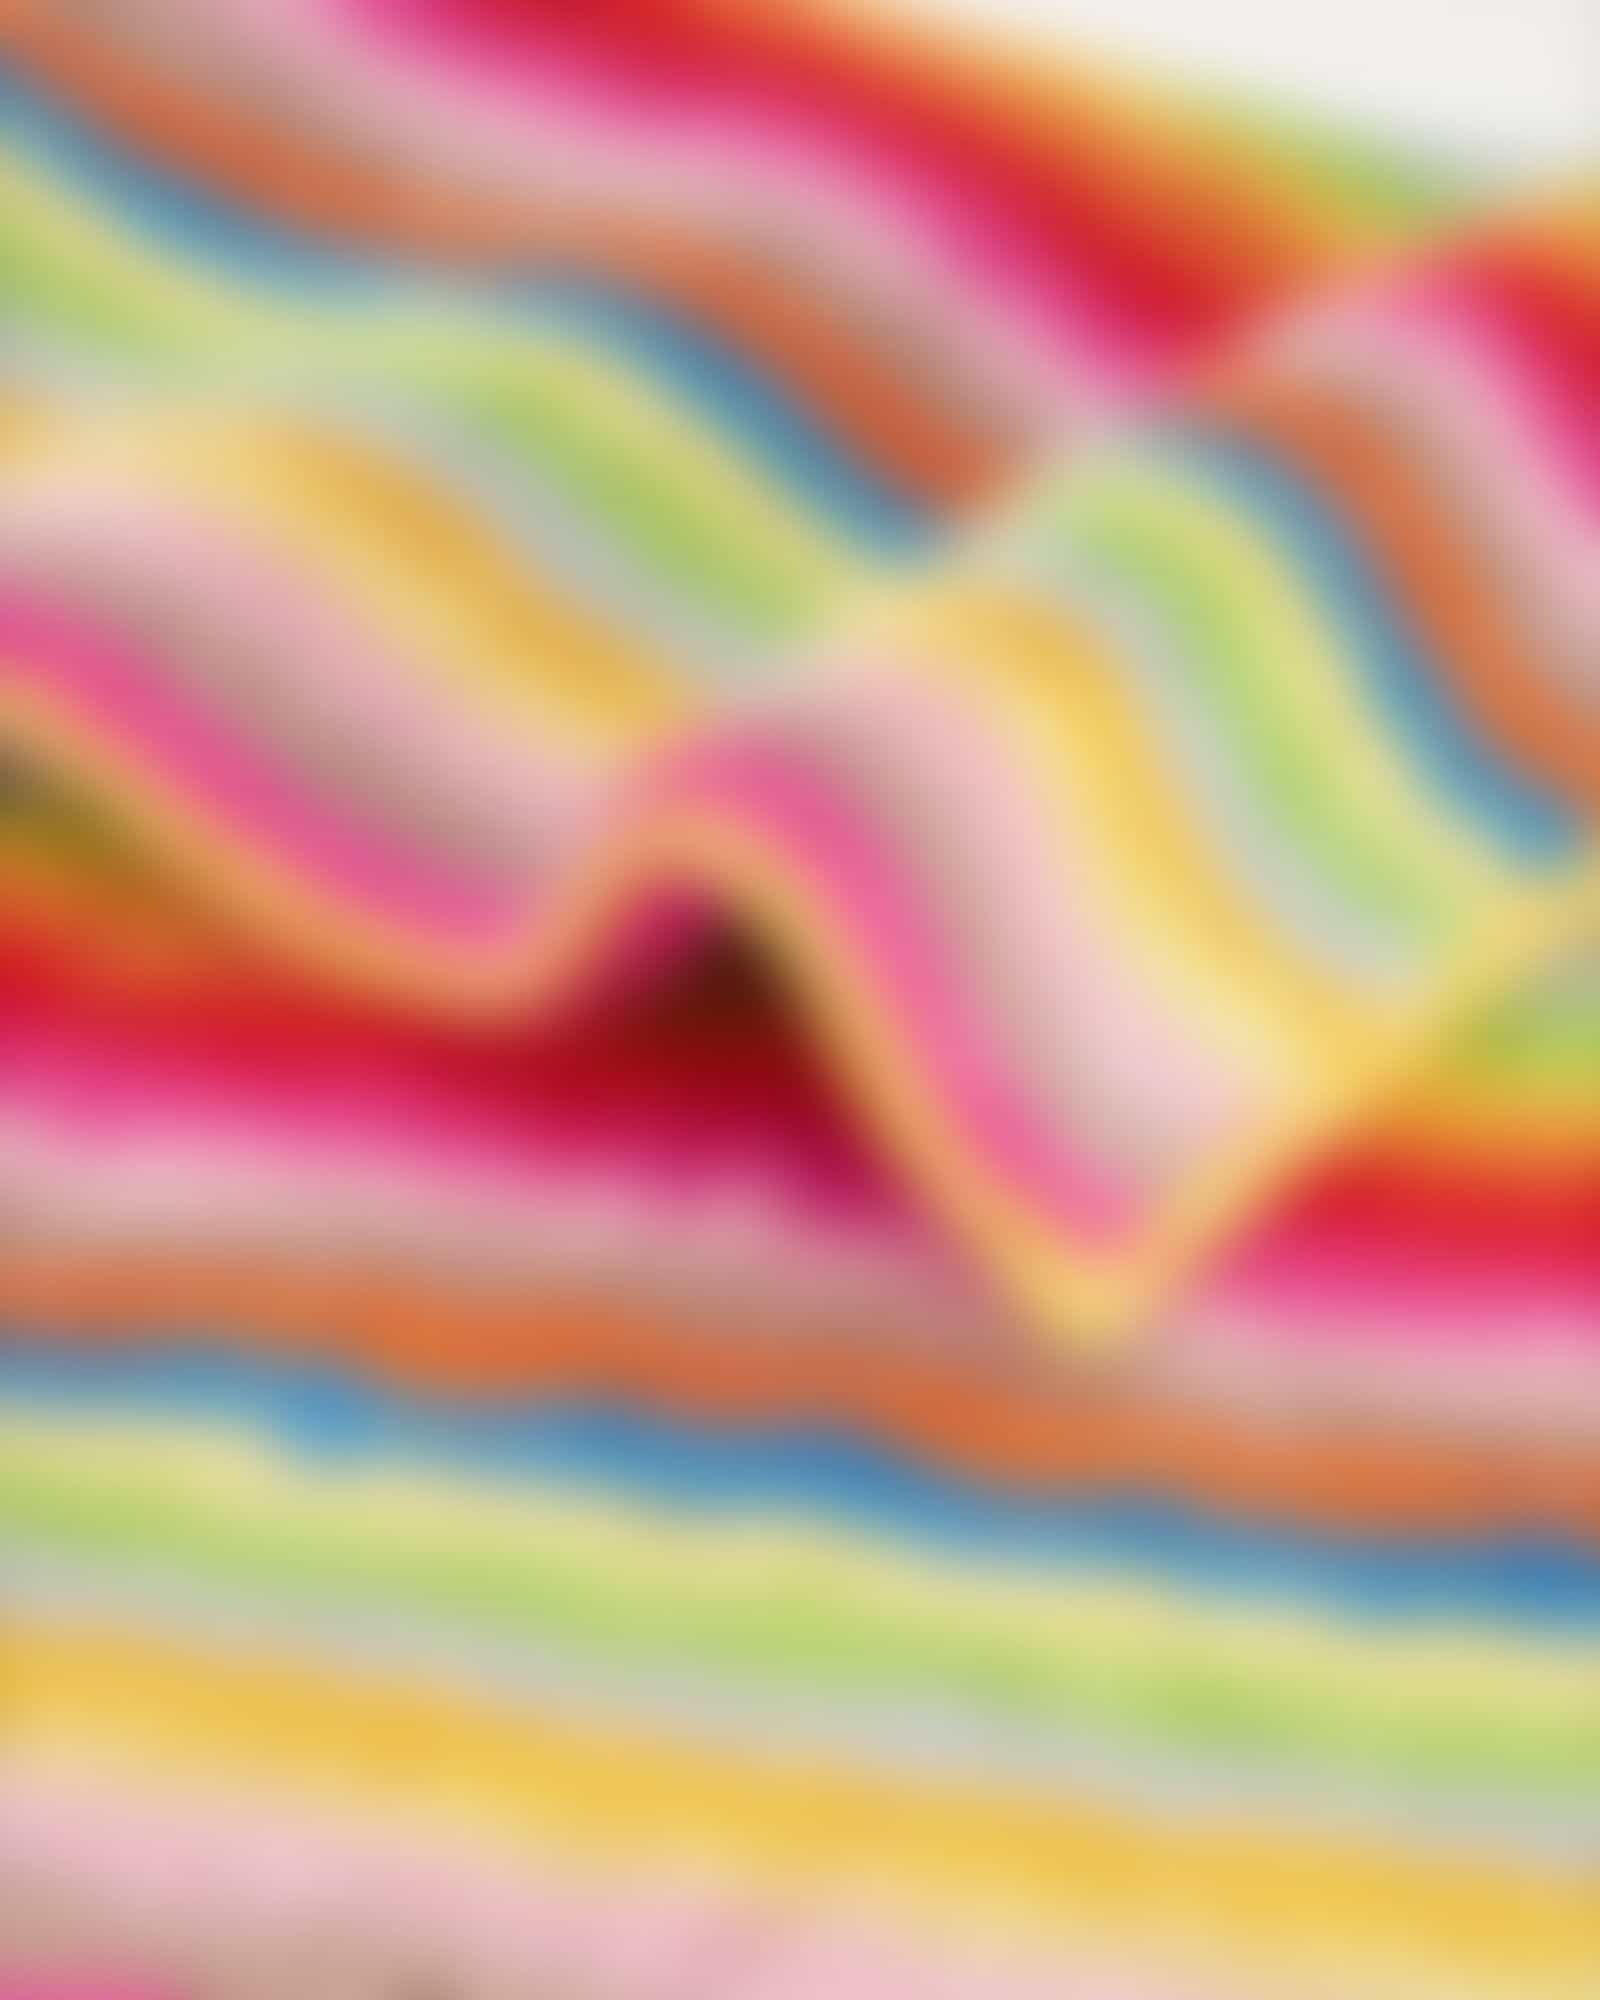 Cawö Home - Badteppich Life Style 7008 - Farbe: multicolor - 25 - 60x100 cm